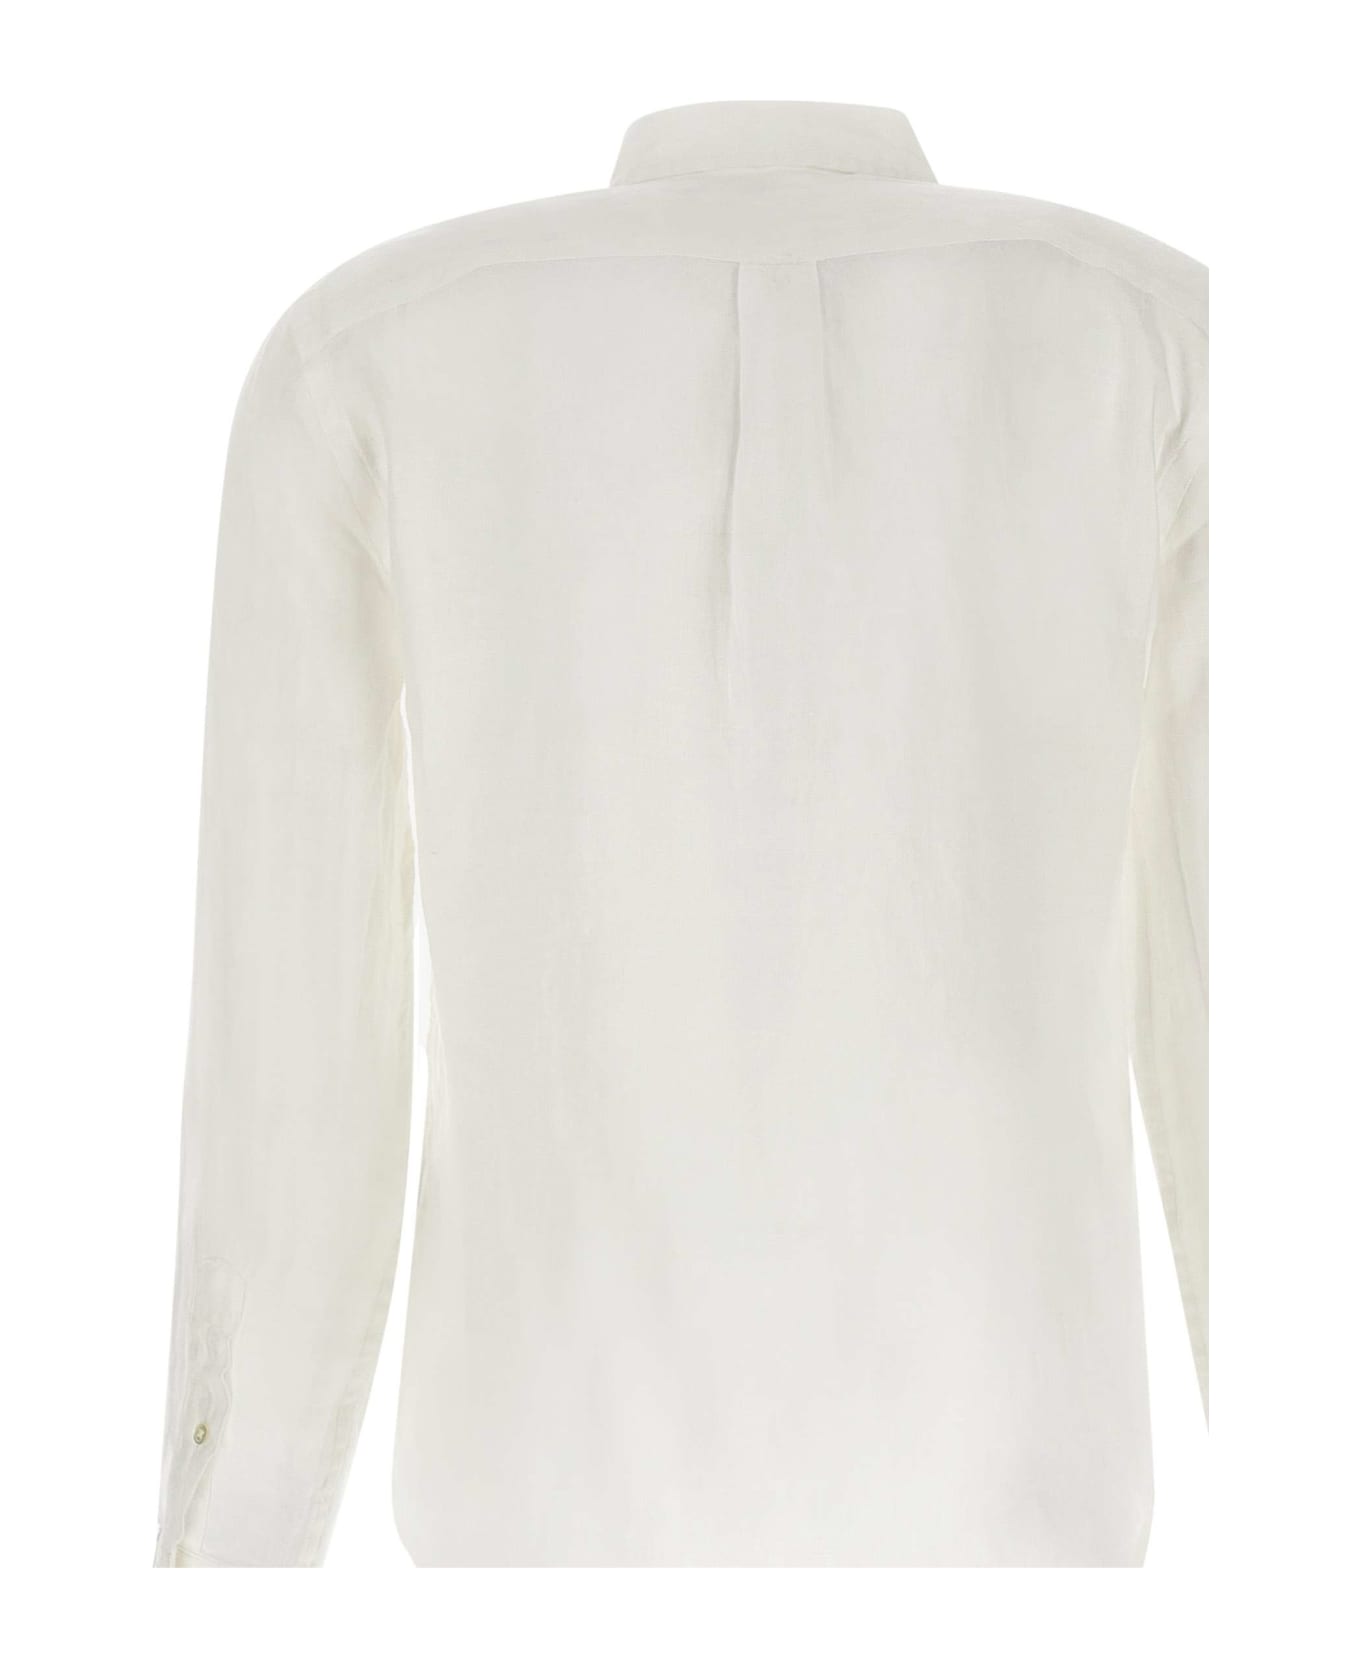 Ralph Lauren 'classic' Linen Shirt - White シャツ